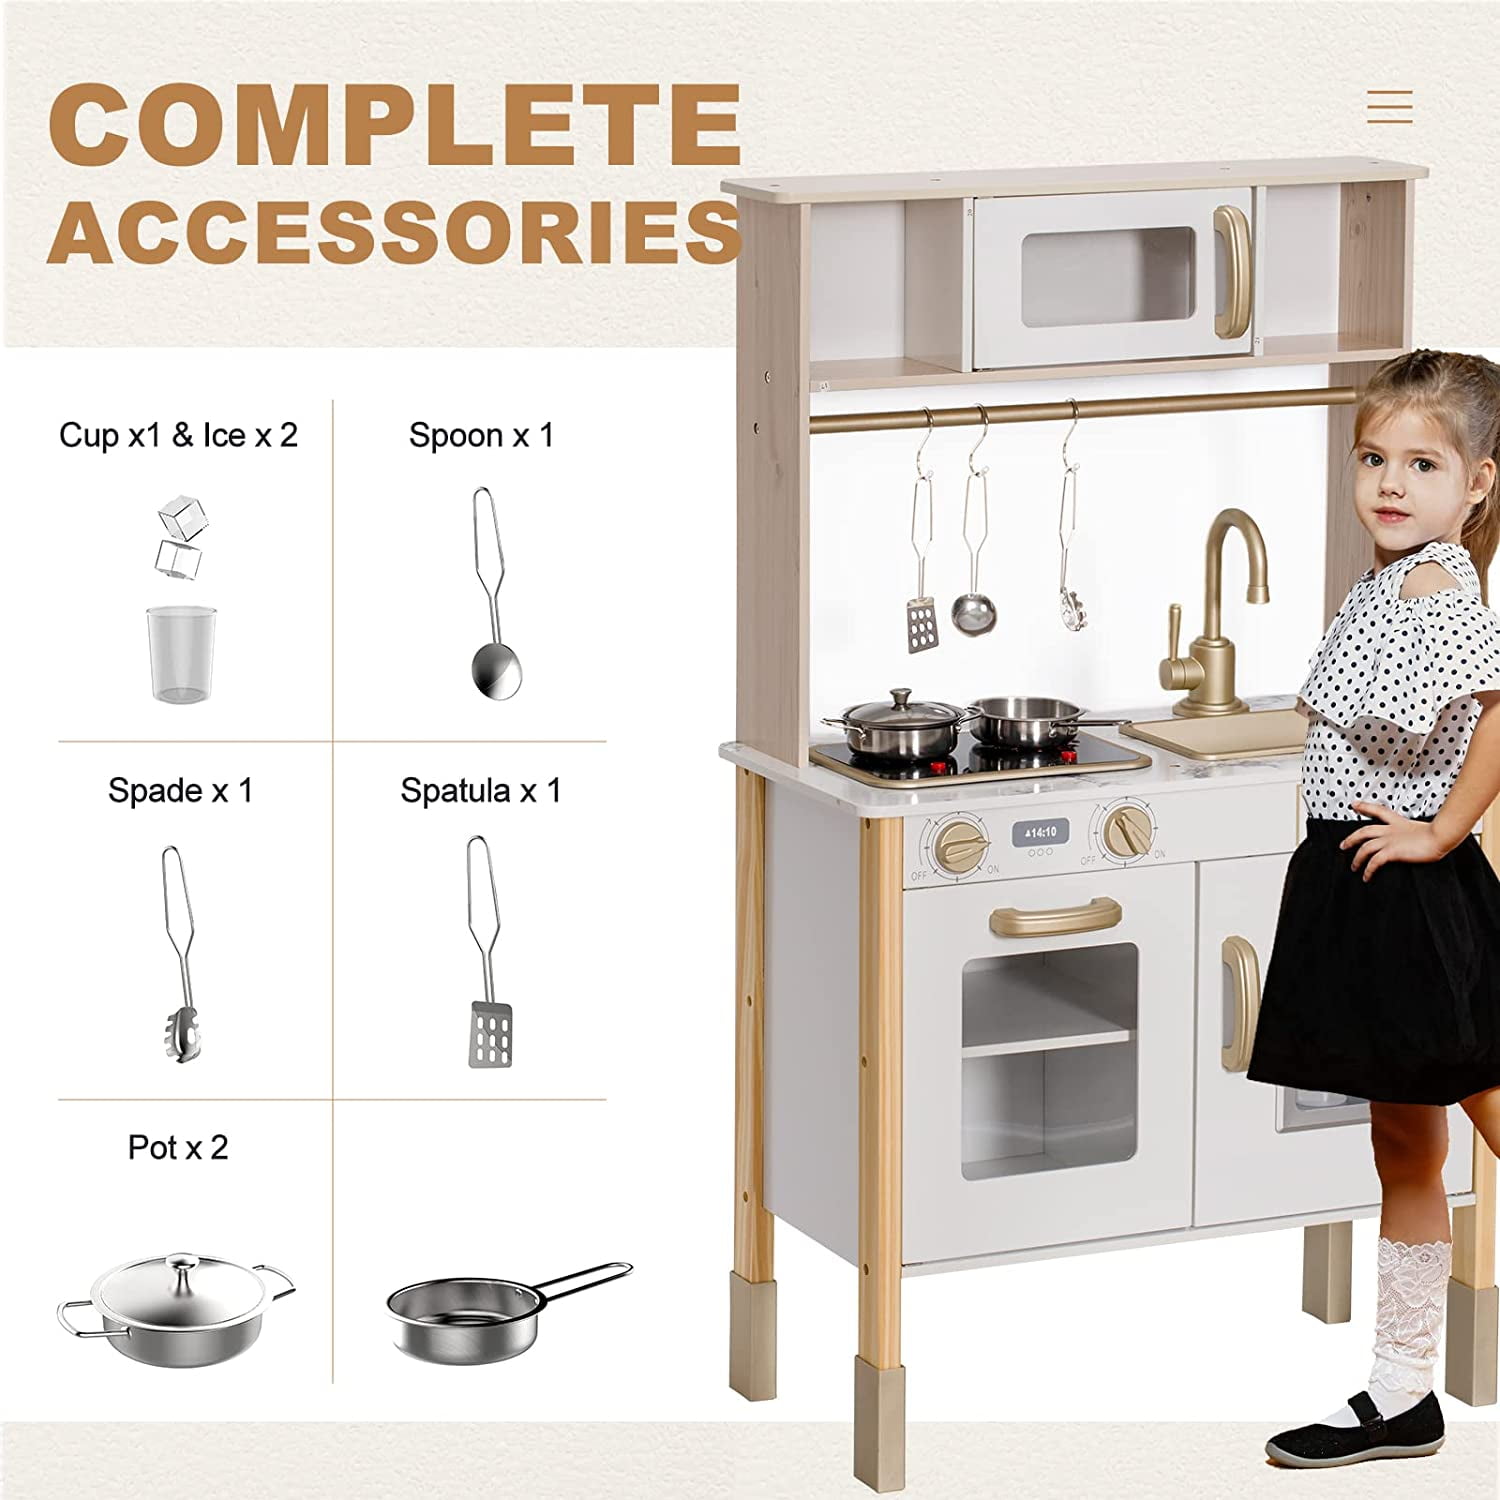 Brinjoy Kitchen Playset for Kids, Wooden Toddler Kitchen Set w/Curtains, Coffee Maker, Storage Shelf, Stove,Sink, Utensils, Light & Sound, Kids